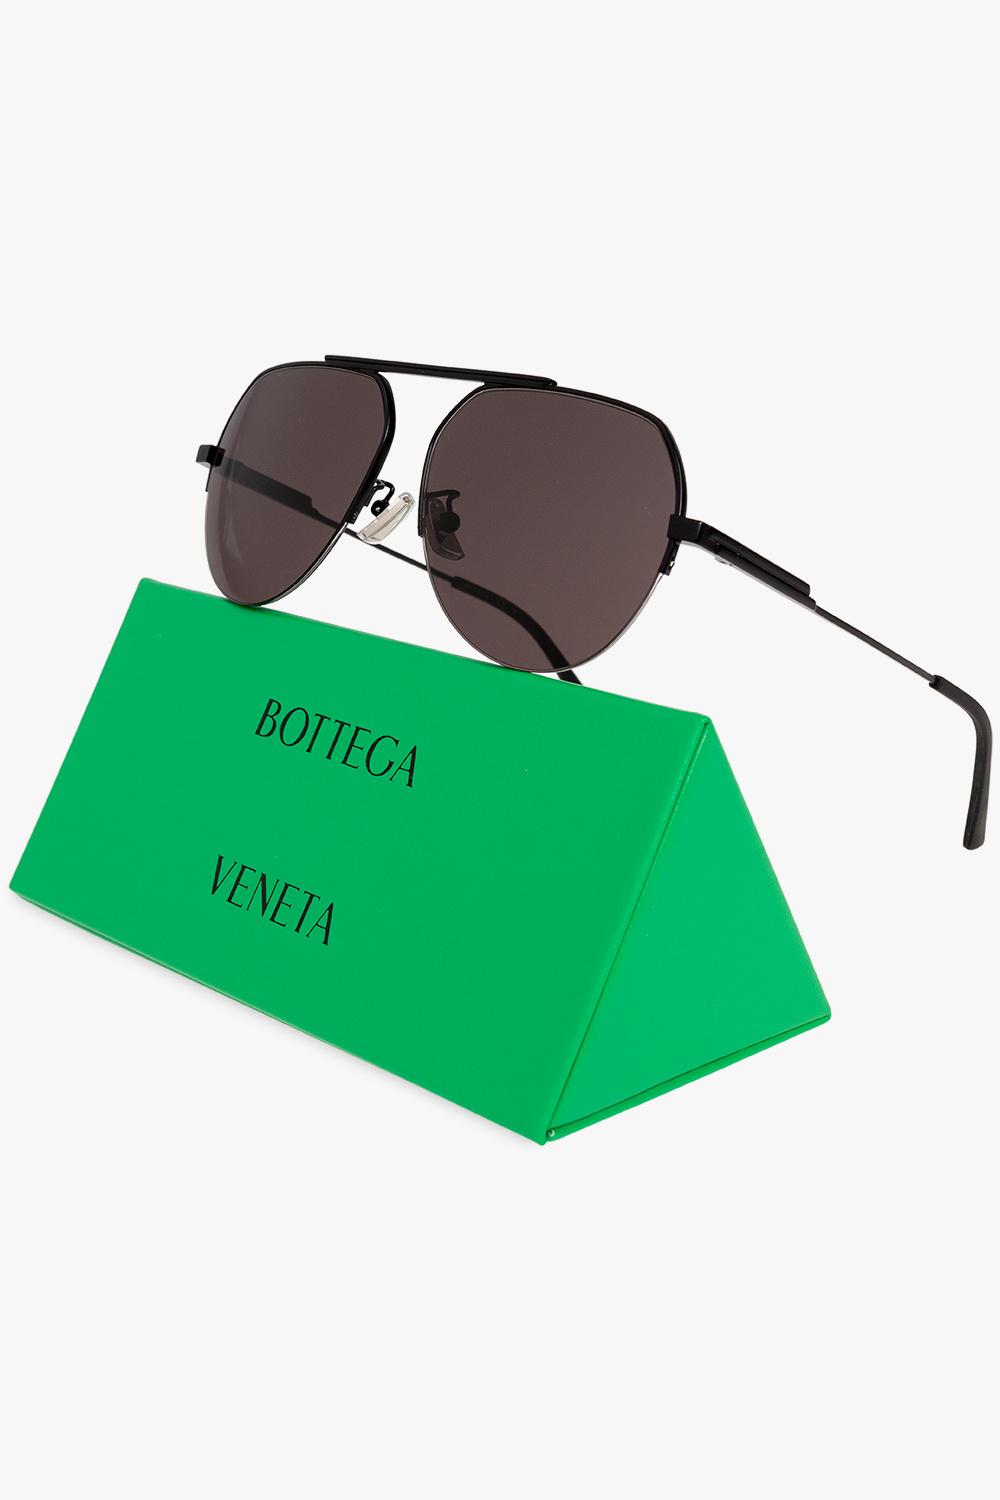 Gold aviator sunglasses Bottega Veneta BV 1194 col.002 gold, Occhiali